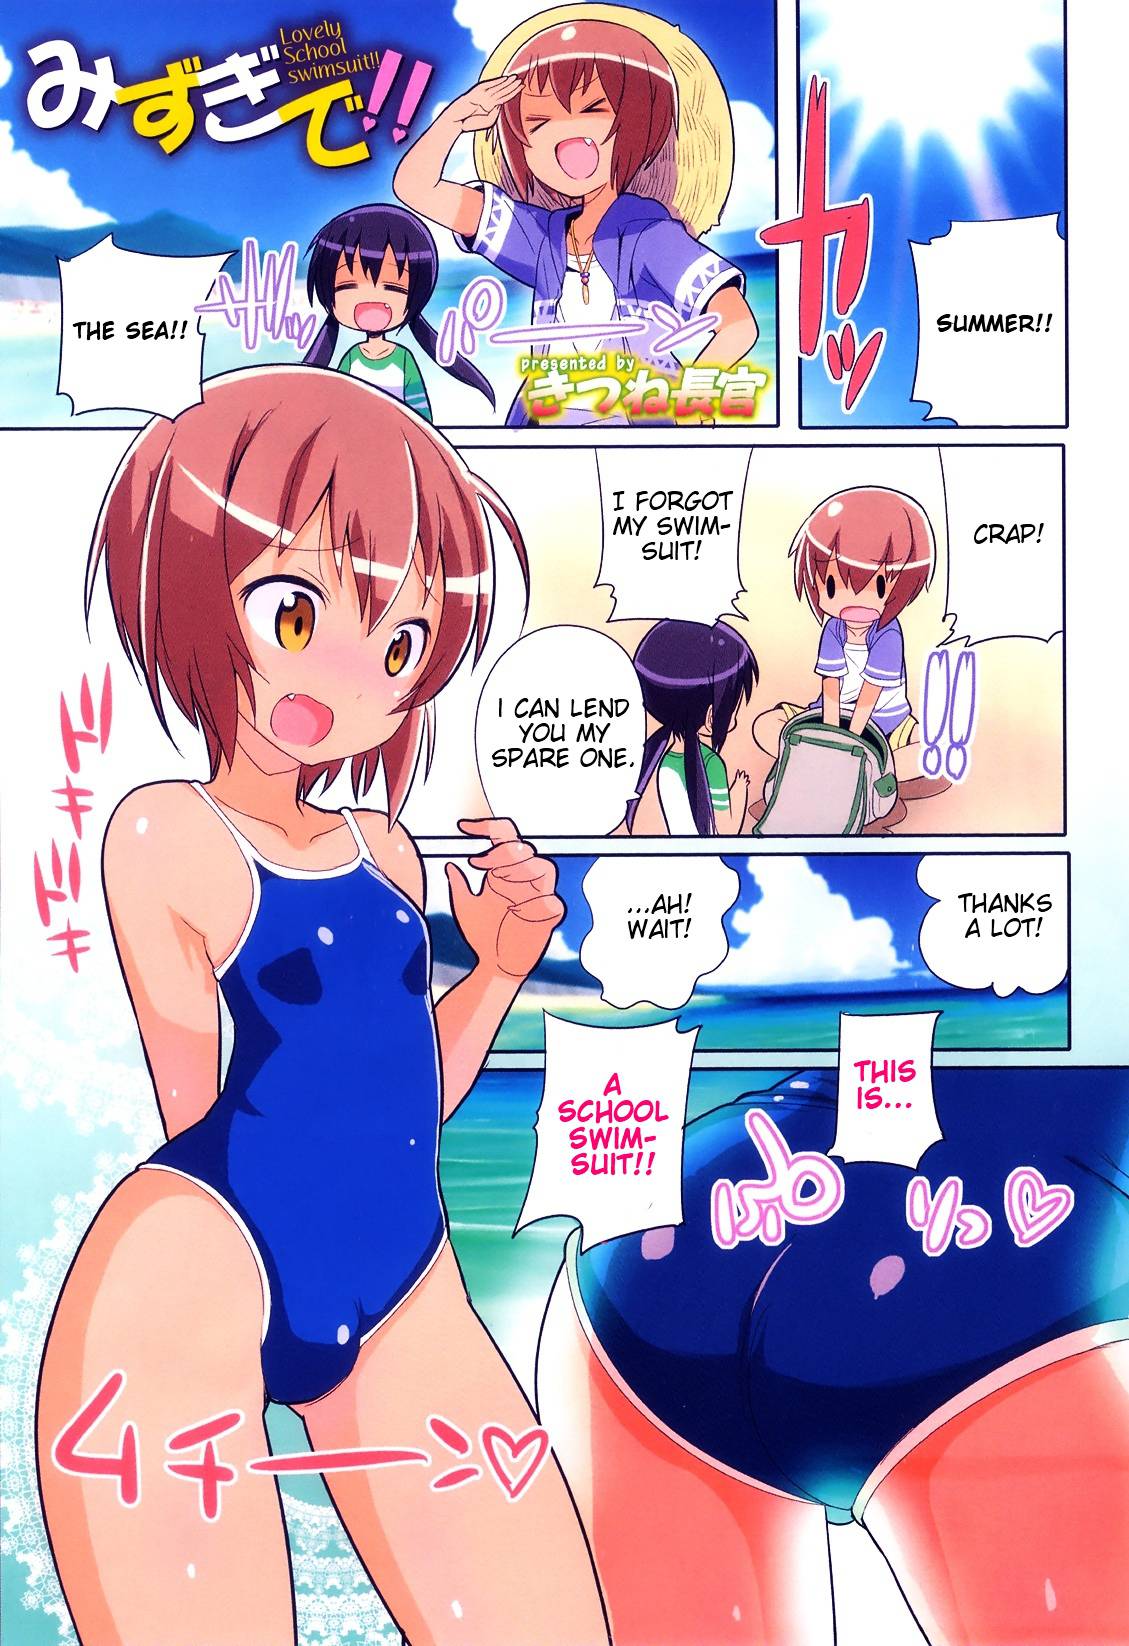 Hentai Swimsuit - Lovely School Swimsuit!